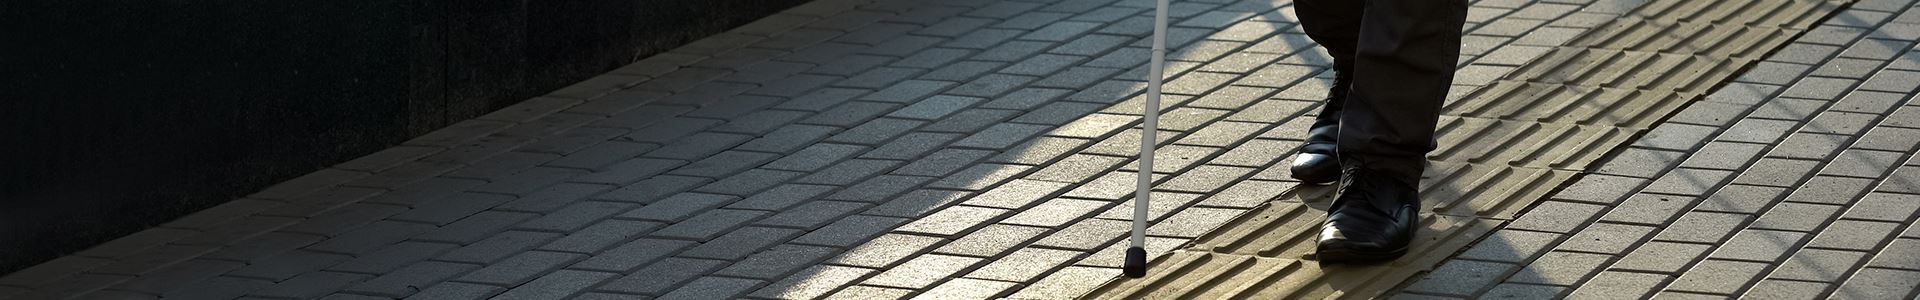 Immagine della parte inferiore di un corpo, che indossa pantaloni e scarpe neri e con un bastone per non vedenti, su un marciapiede grigio con pavimento tattile per non vedenti.